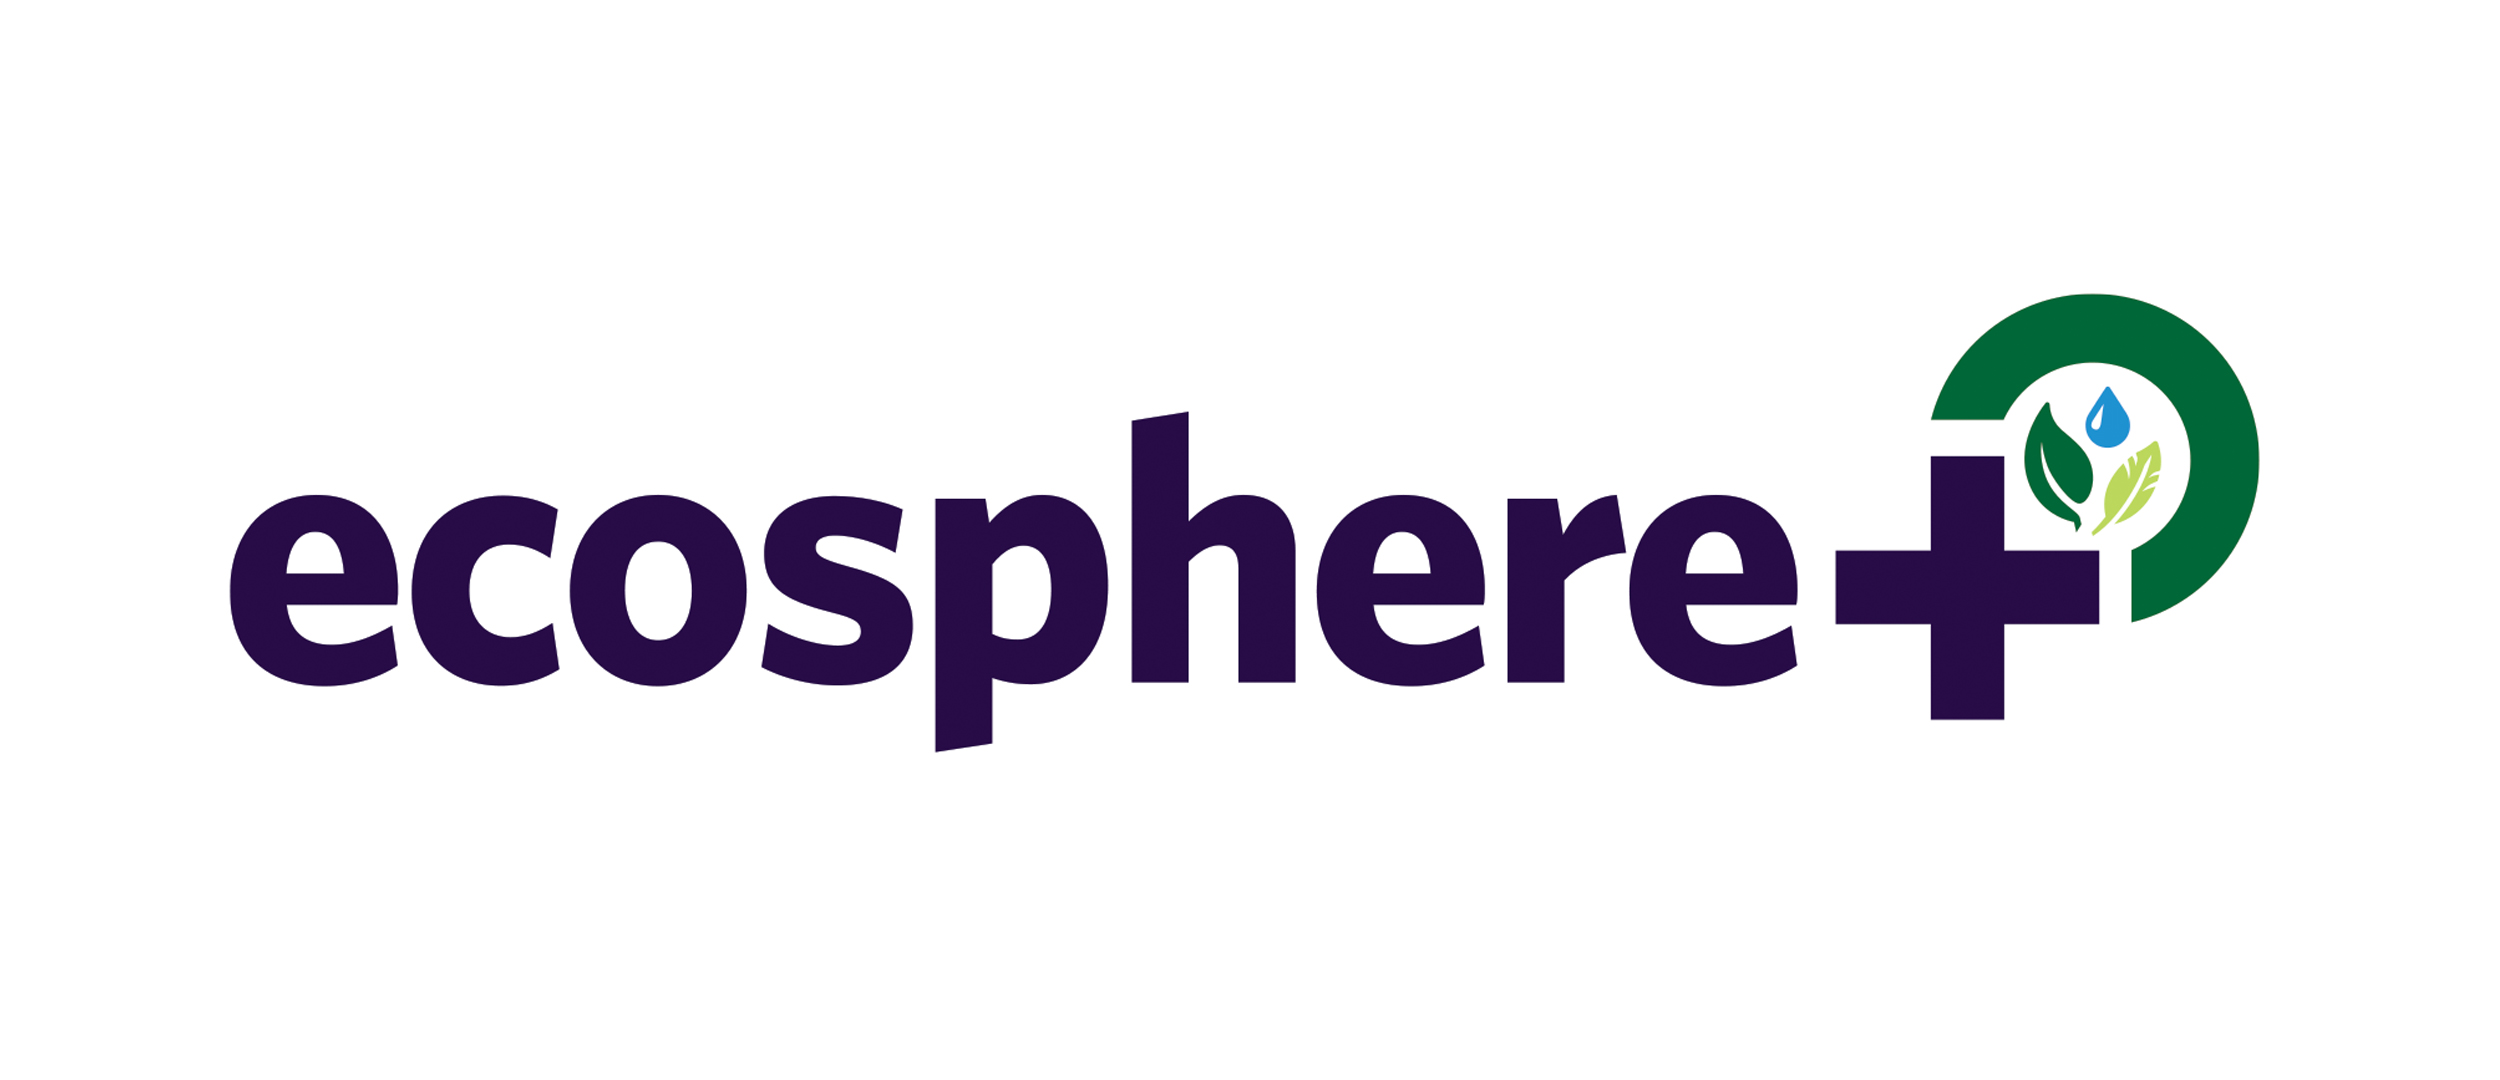 ecosphereplus logo post